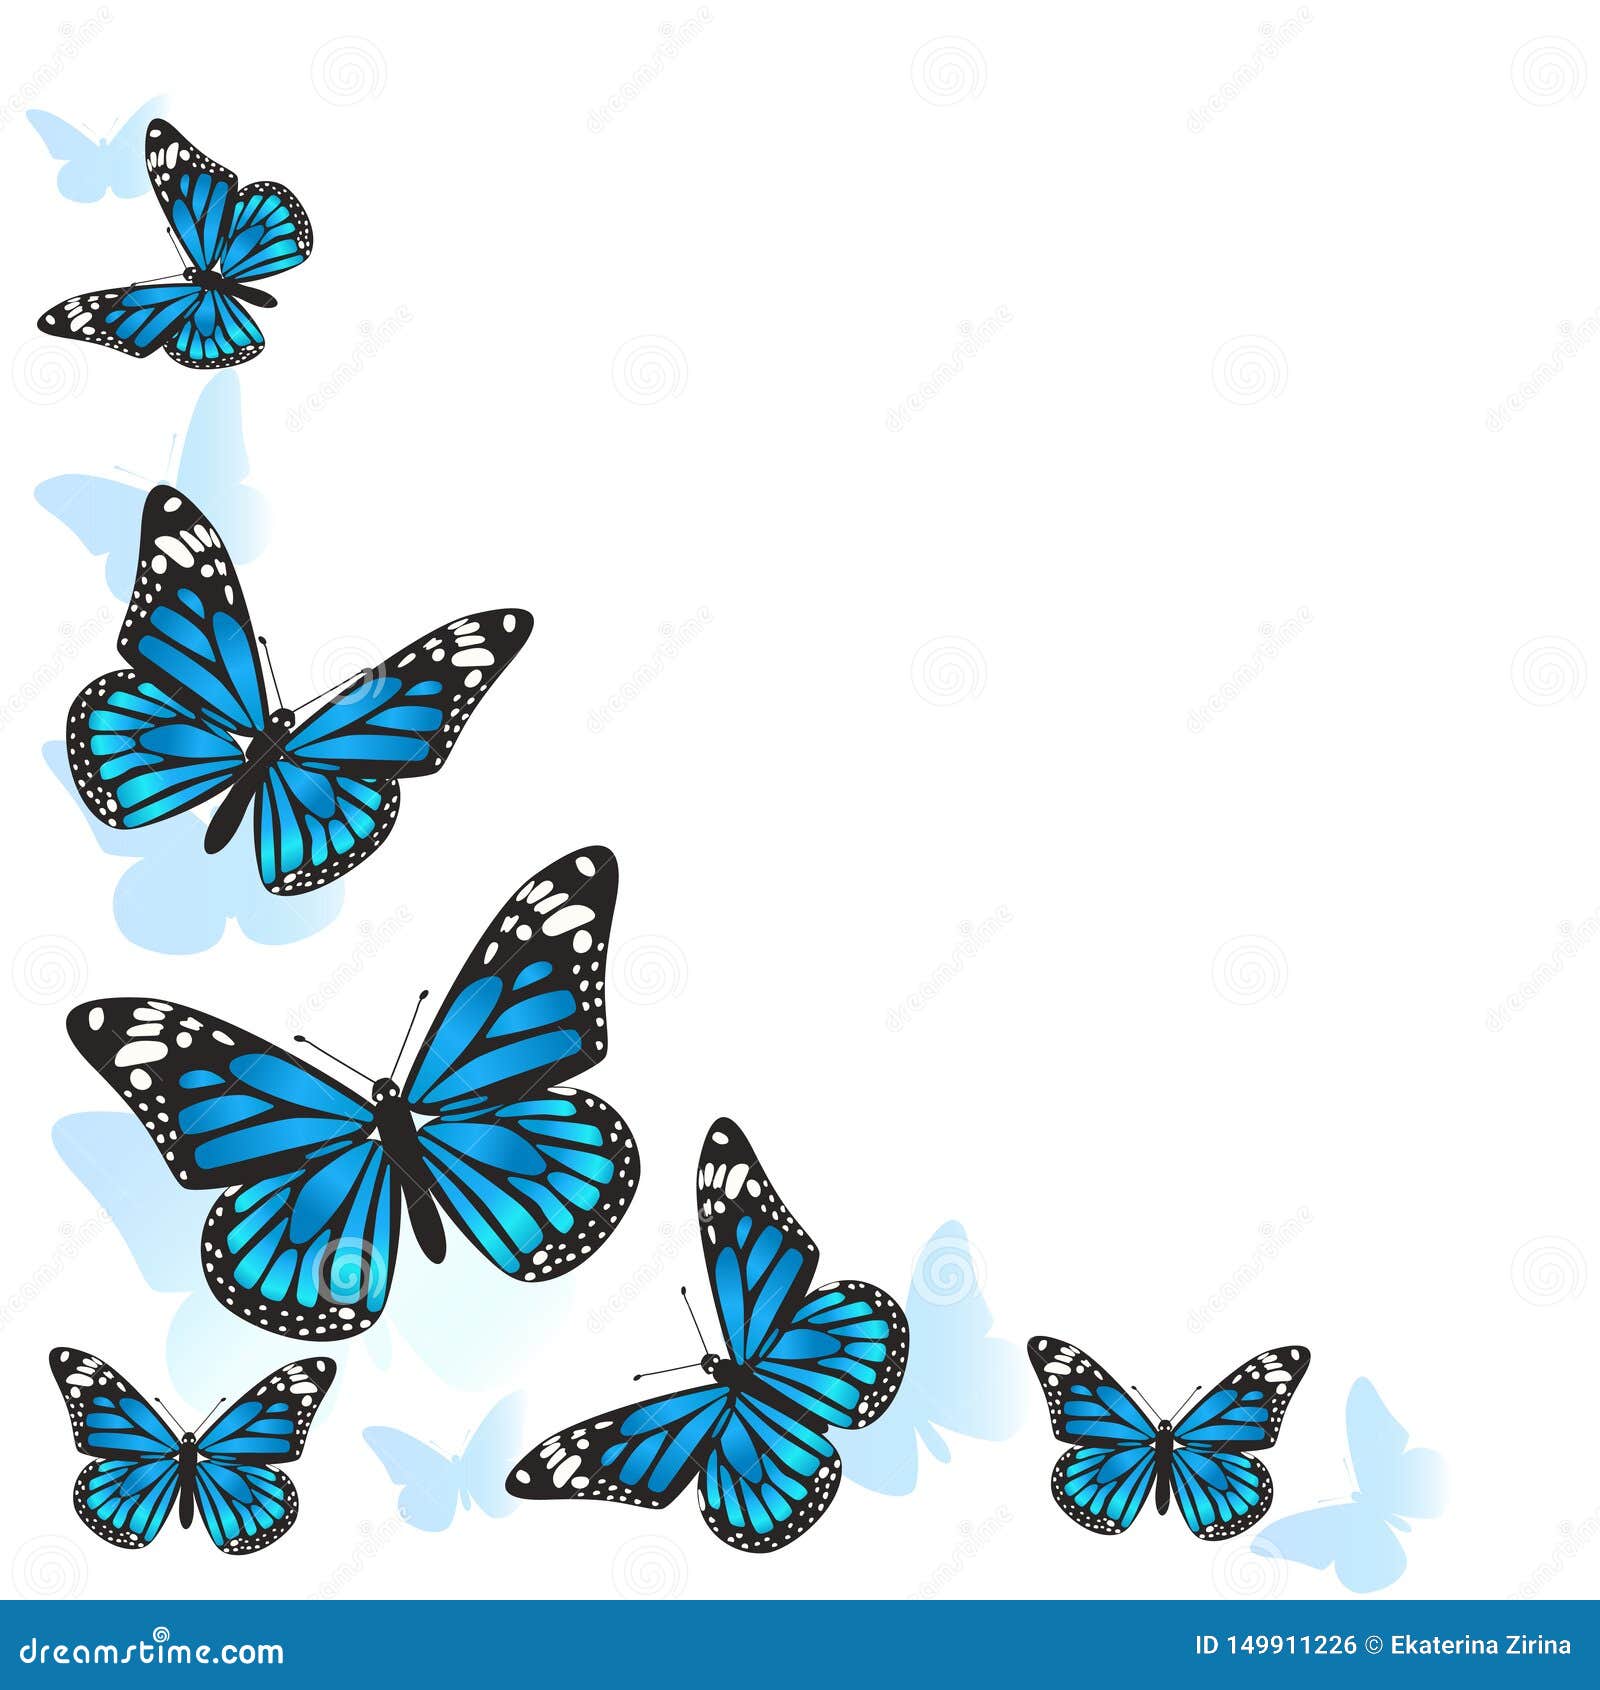 Đàn bướm xanh với hàng trăm chú bướm đang bay lượn sẽ khiến bạn có cảm giác như đang lạc vào một giai điệu nhịp nhàng của thiên nhiên. Hãy cùng xem bức ảnh đàn bướm xanh để khám phá sự đẹp đến kỳ lạ của tự nhiên.